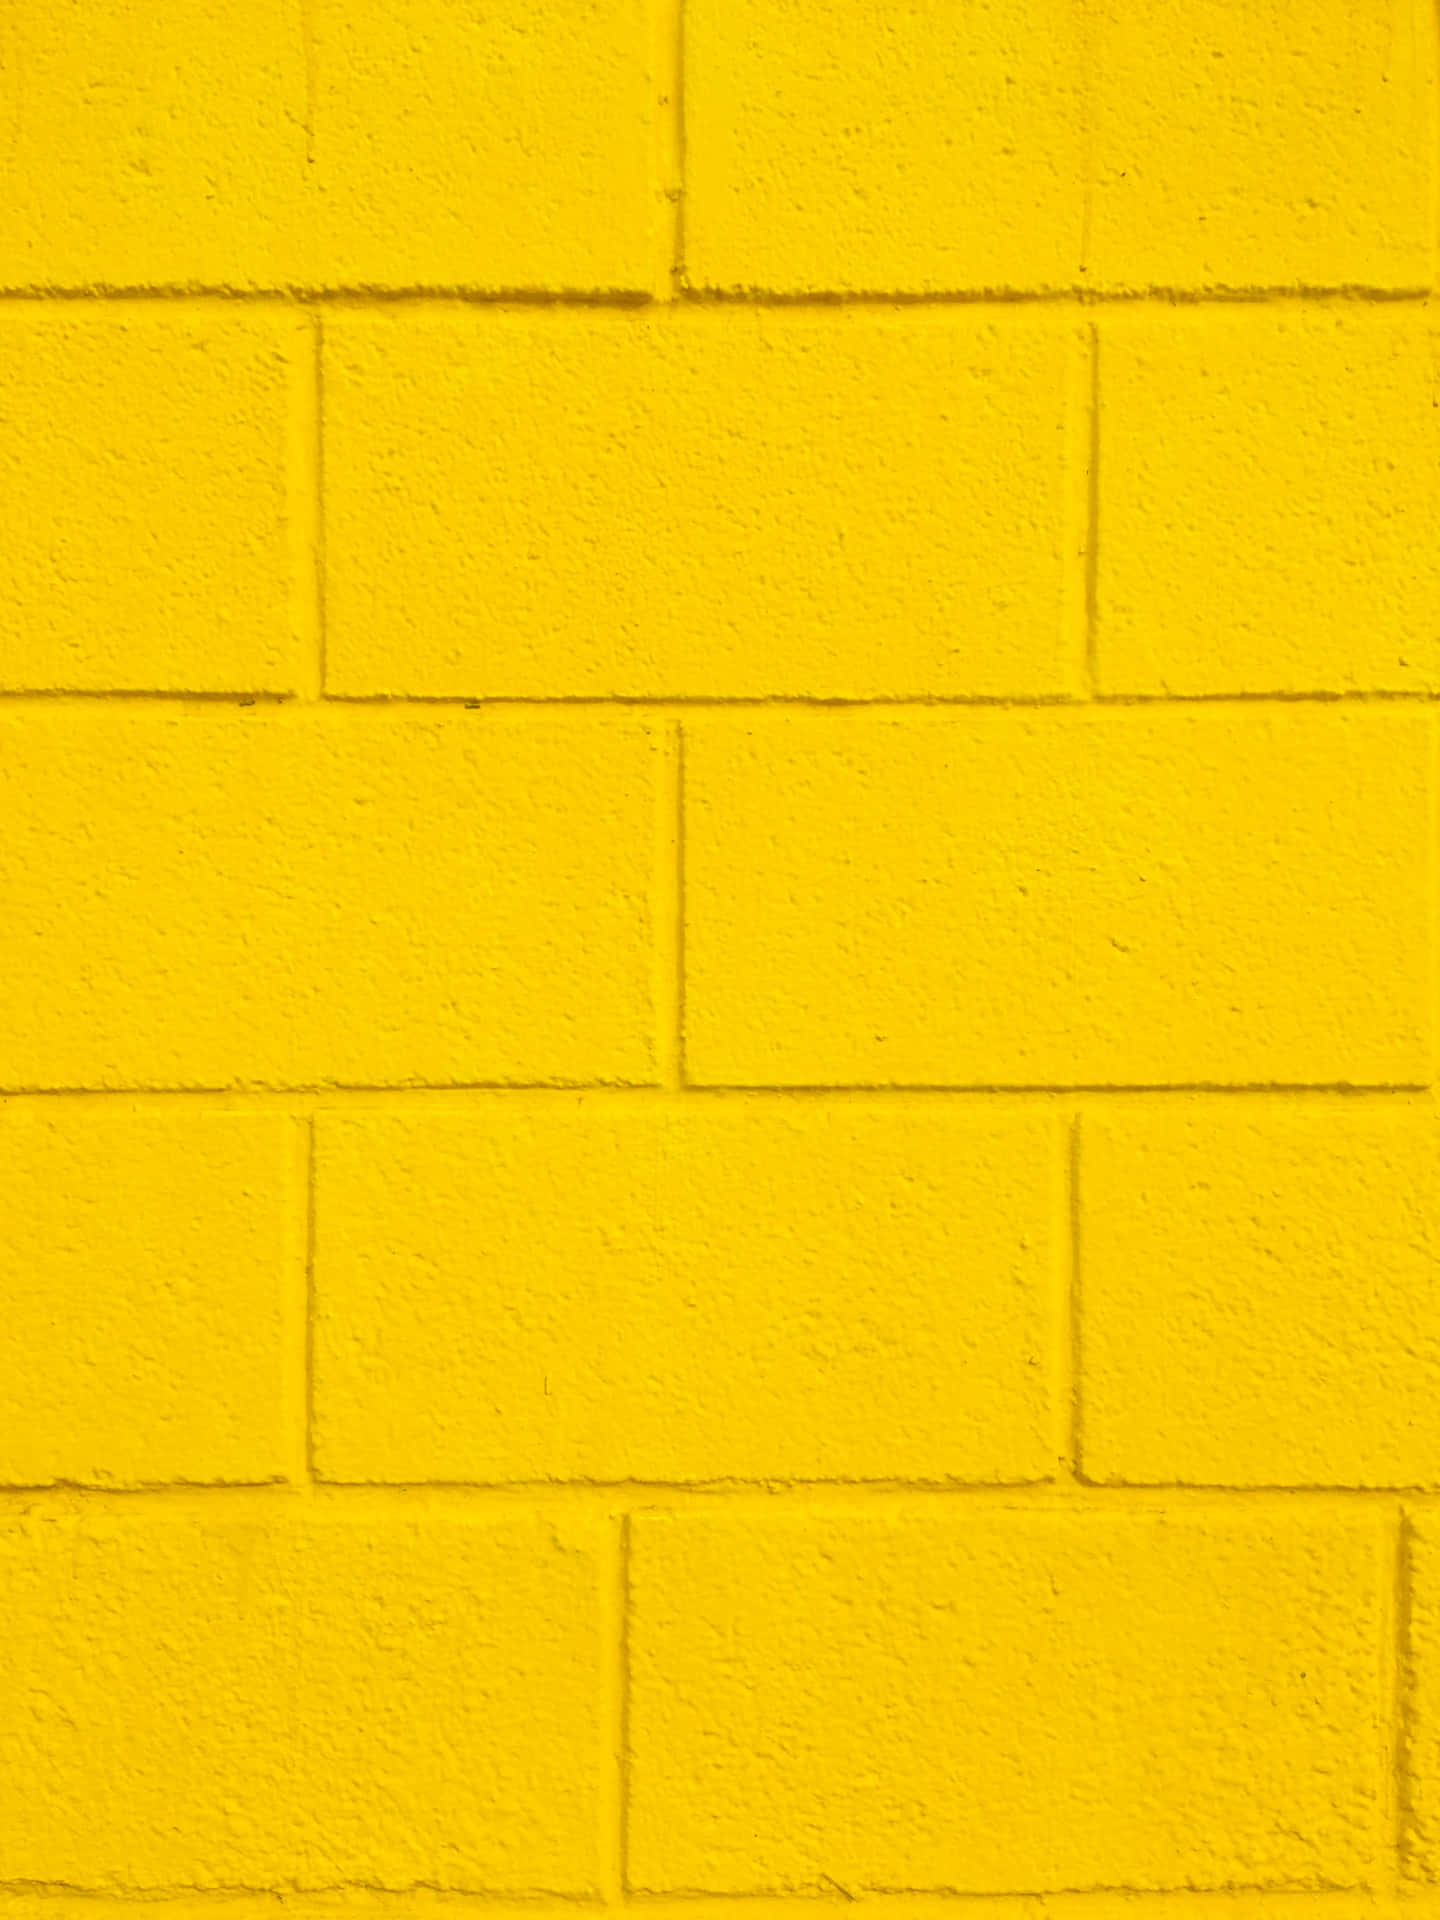 Papelde Parede Fofo Em Tons Pastel De Amarelo Tijolo. Papel de Parede